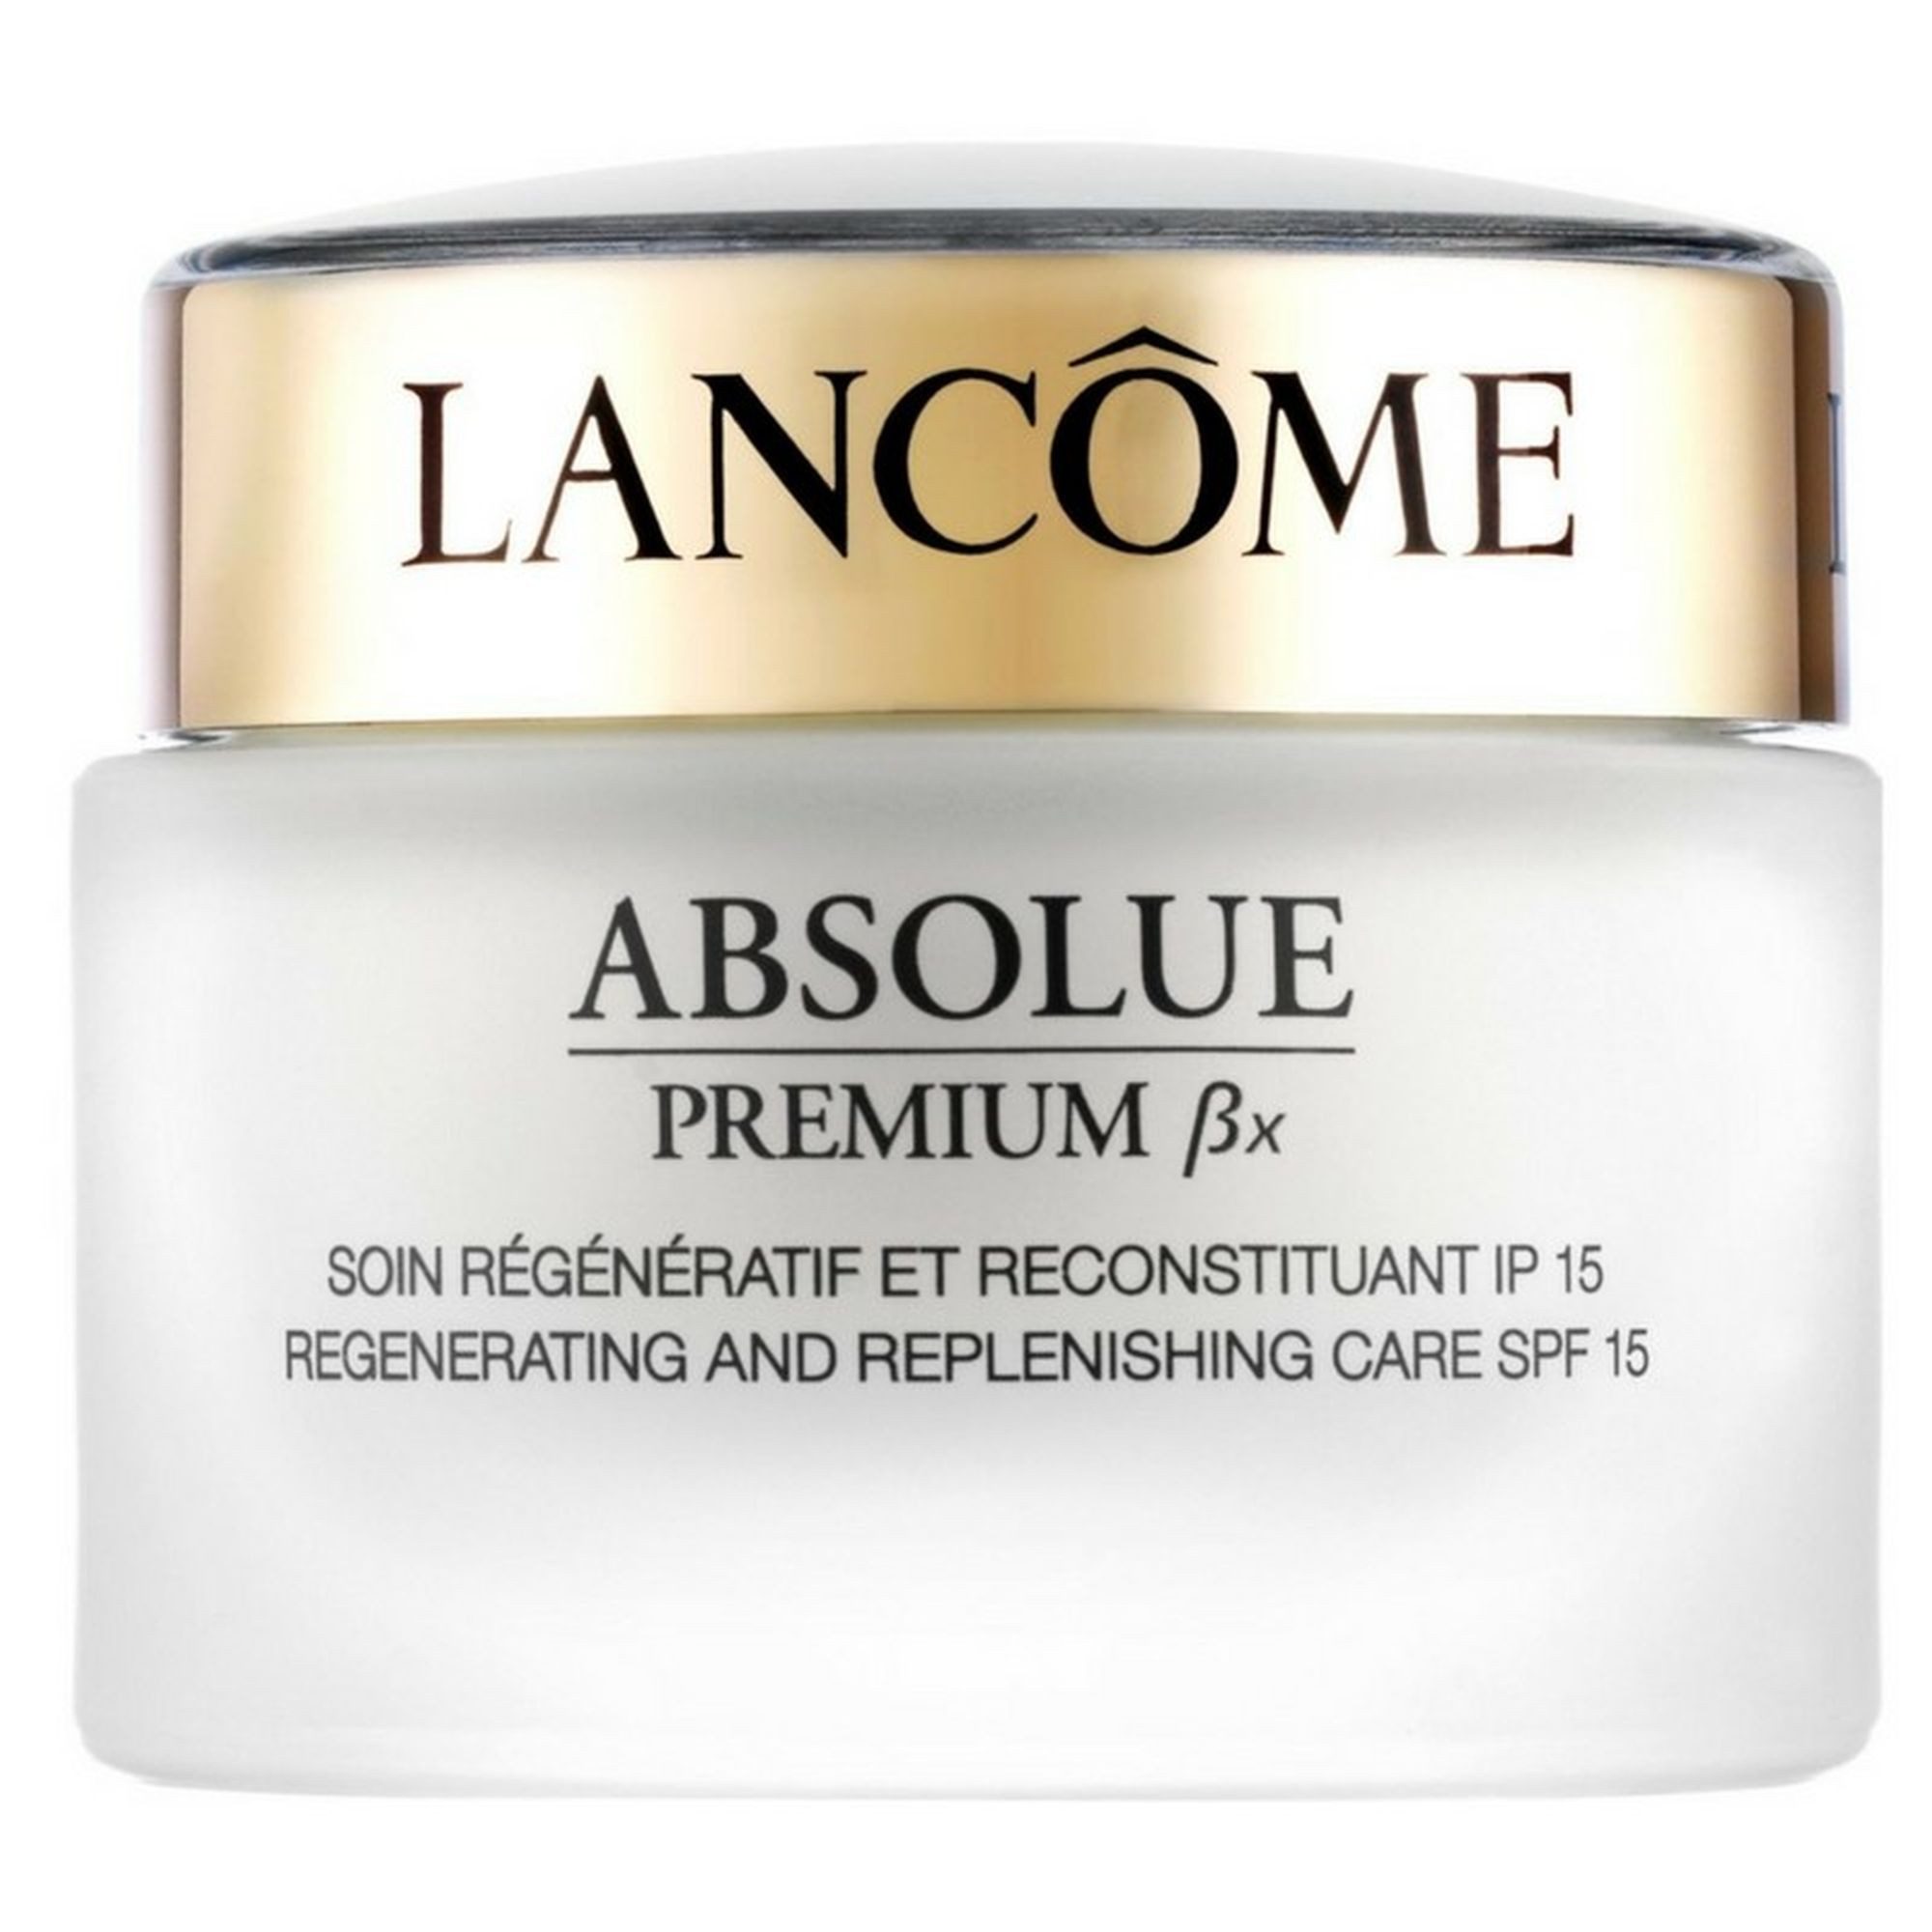 LANCOME Anti-Aging-Creme Absolue Premium ßx Gesichtscreme, Creme